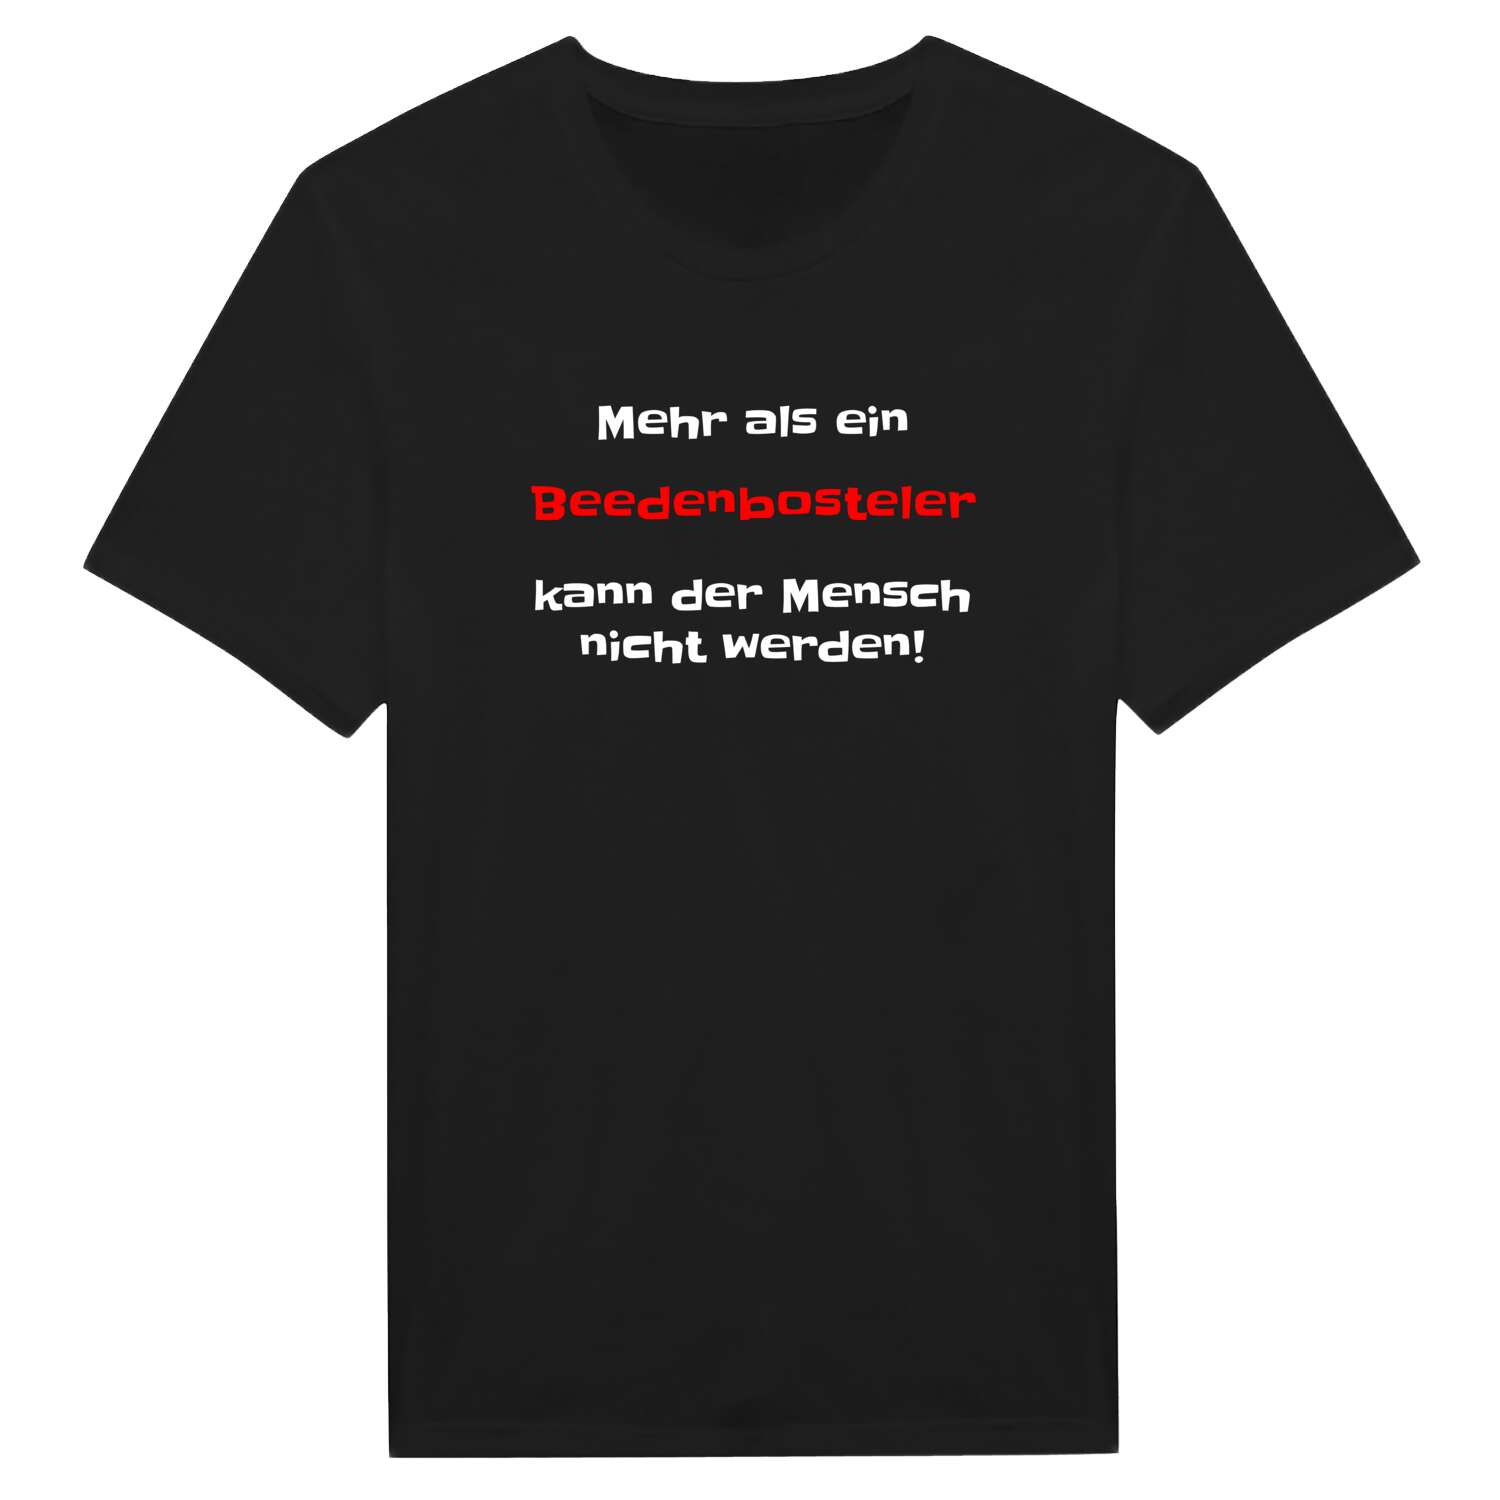 Beedenbostel T-Shirt »Mehr als ein«